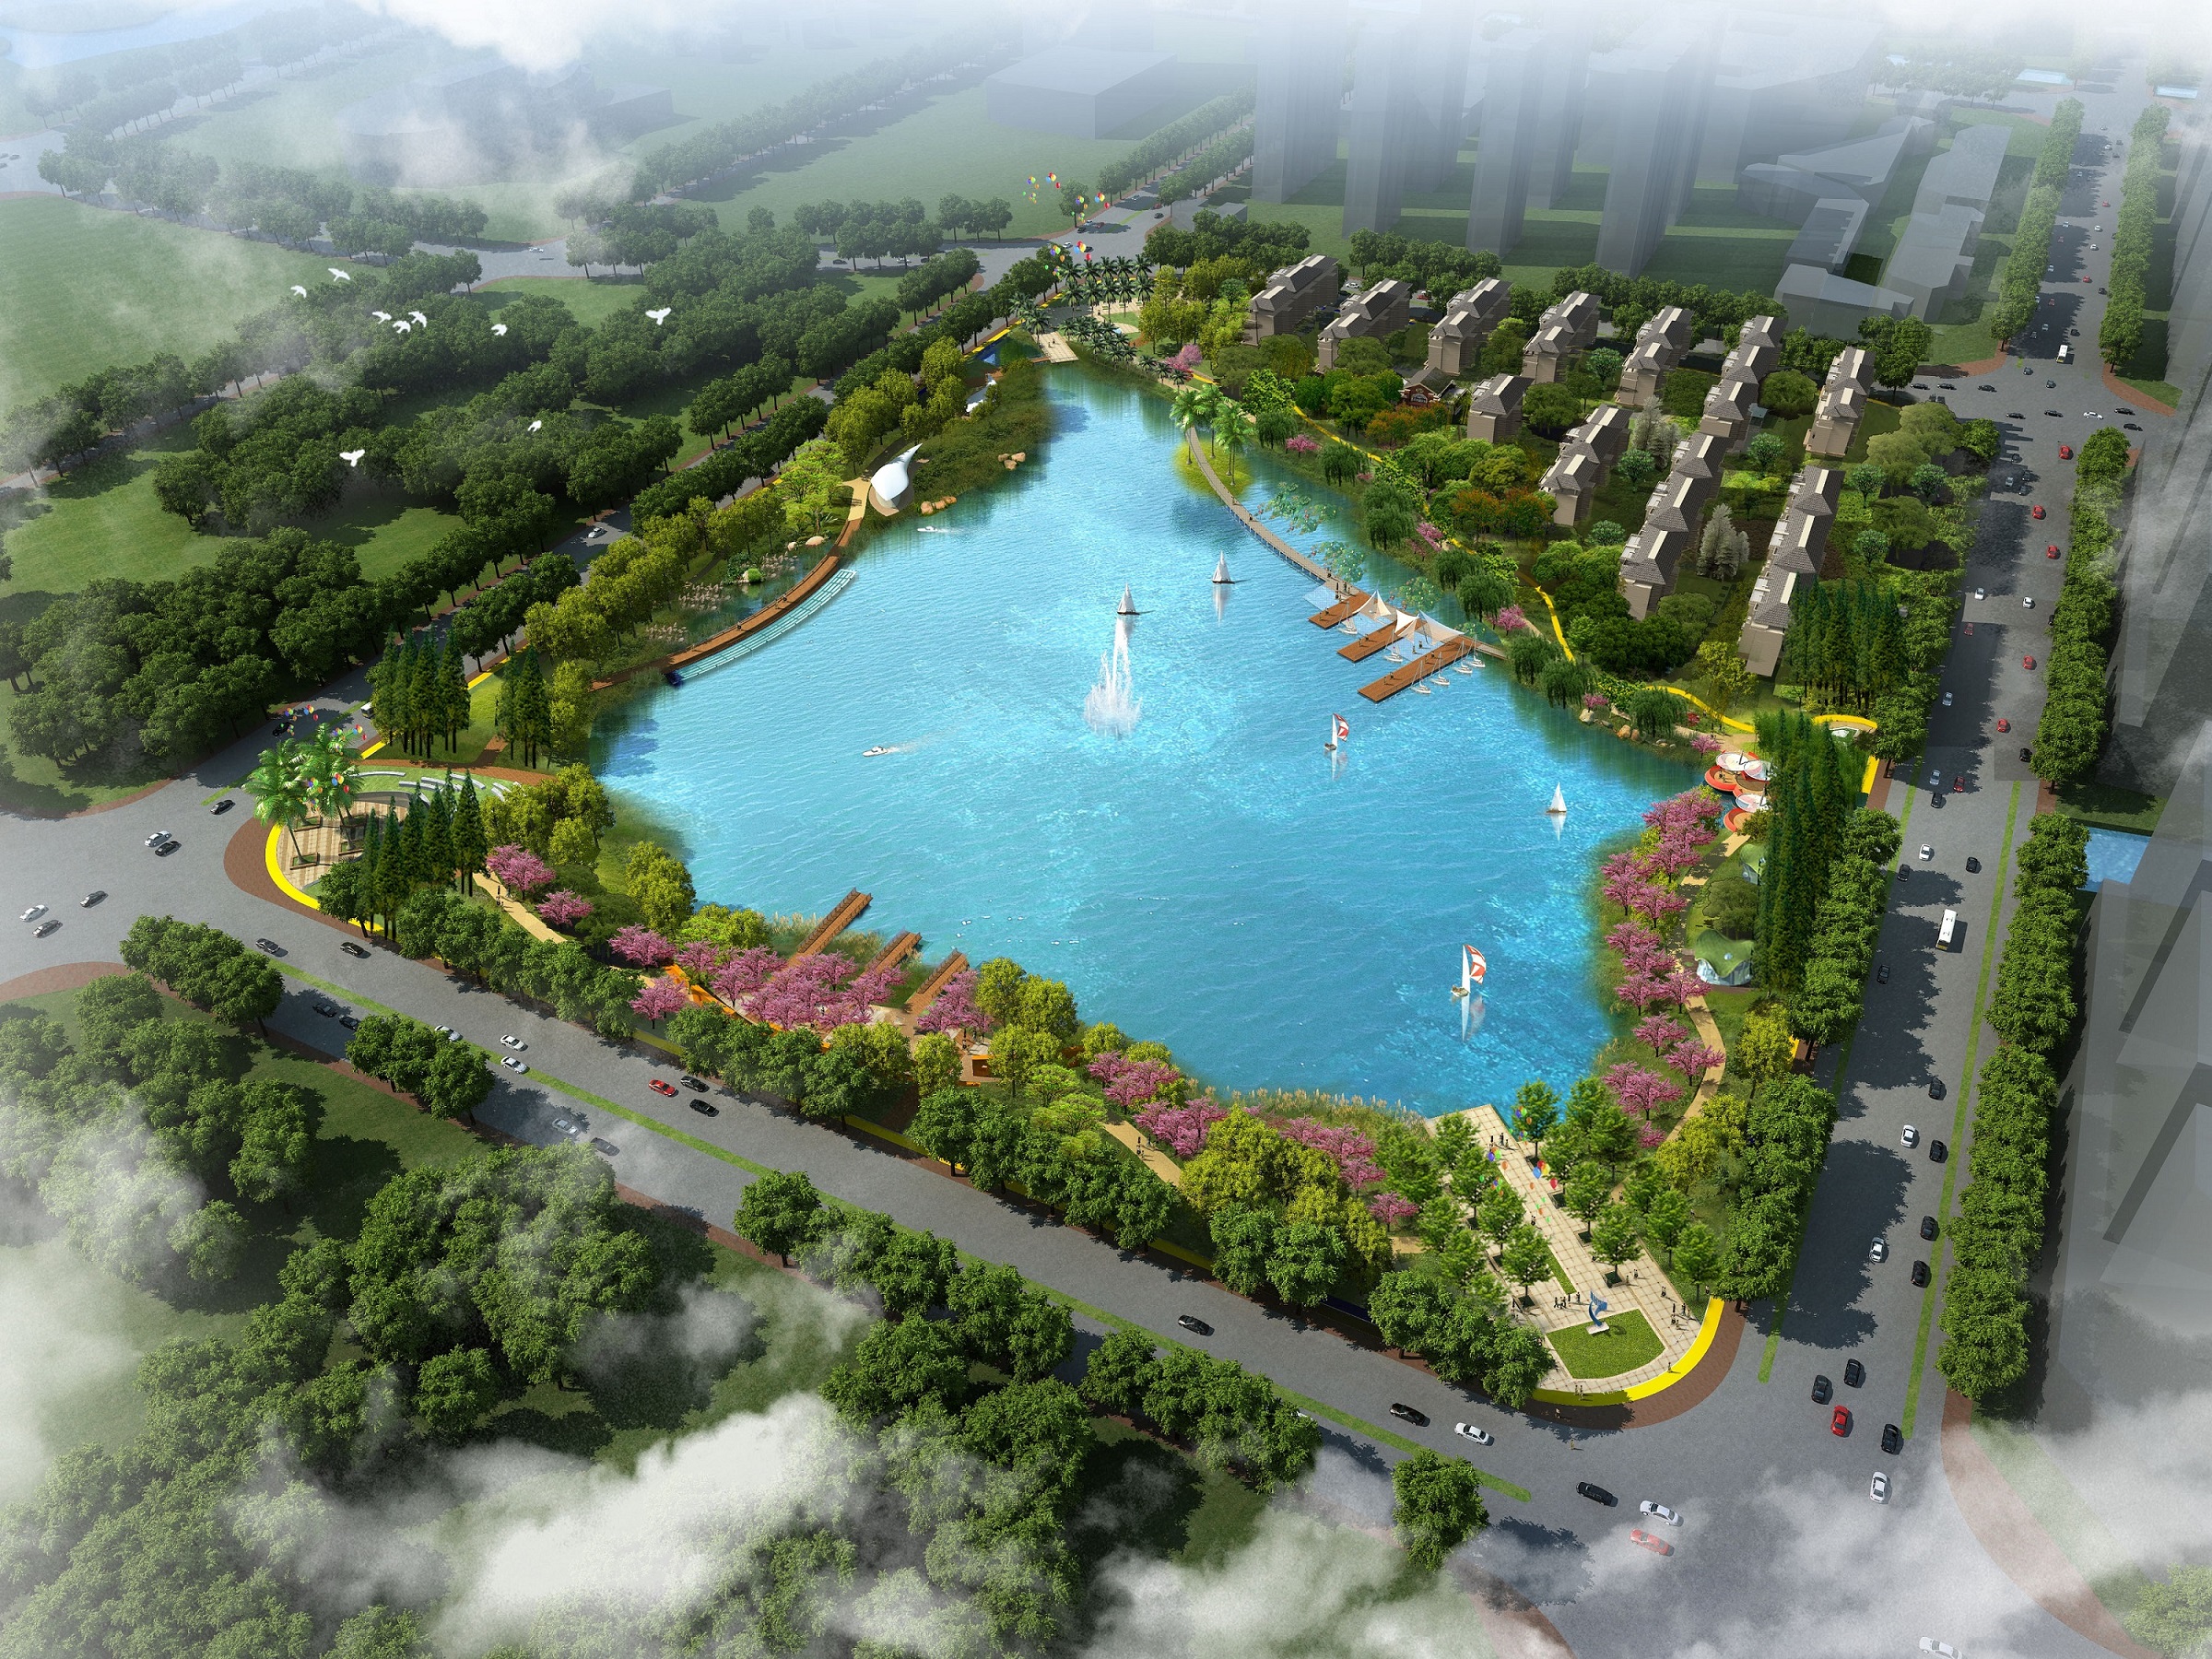 上海金山区金城湖城市公园景观概念方案